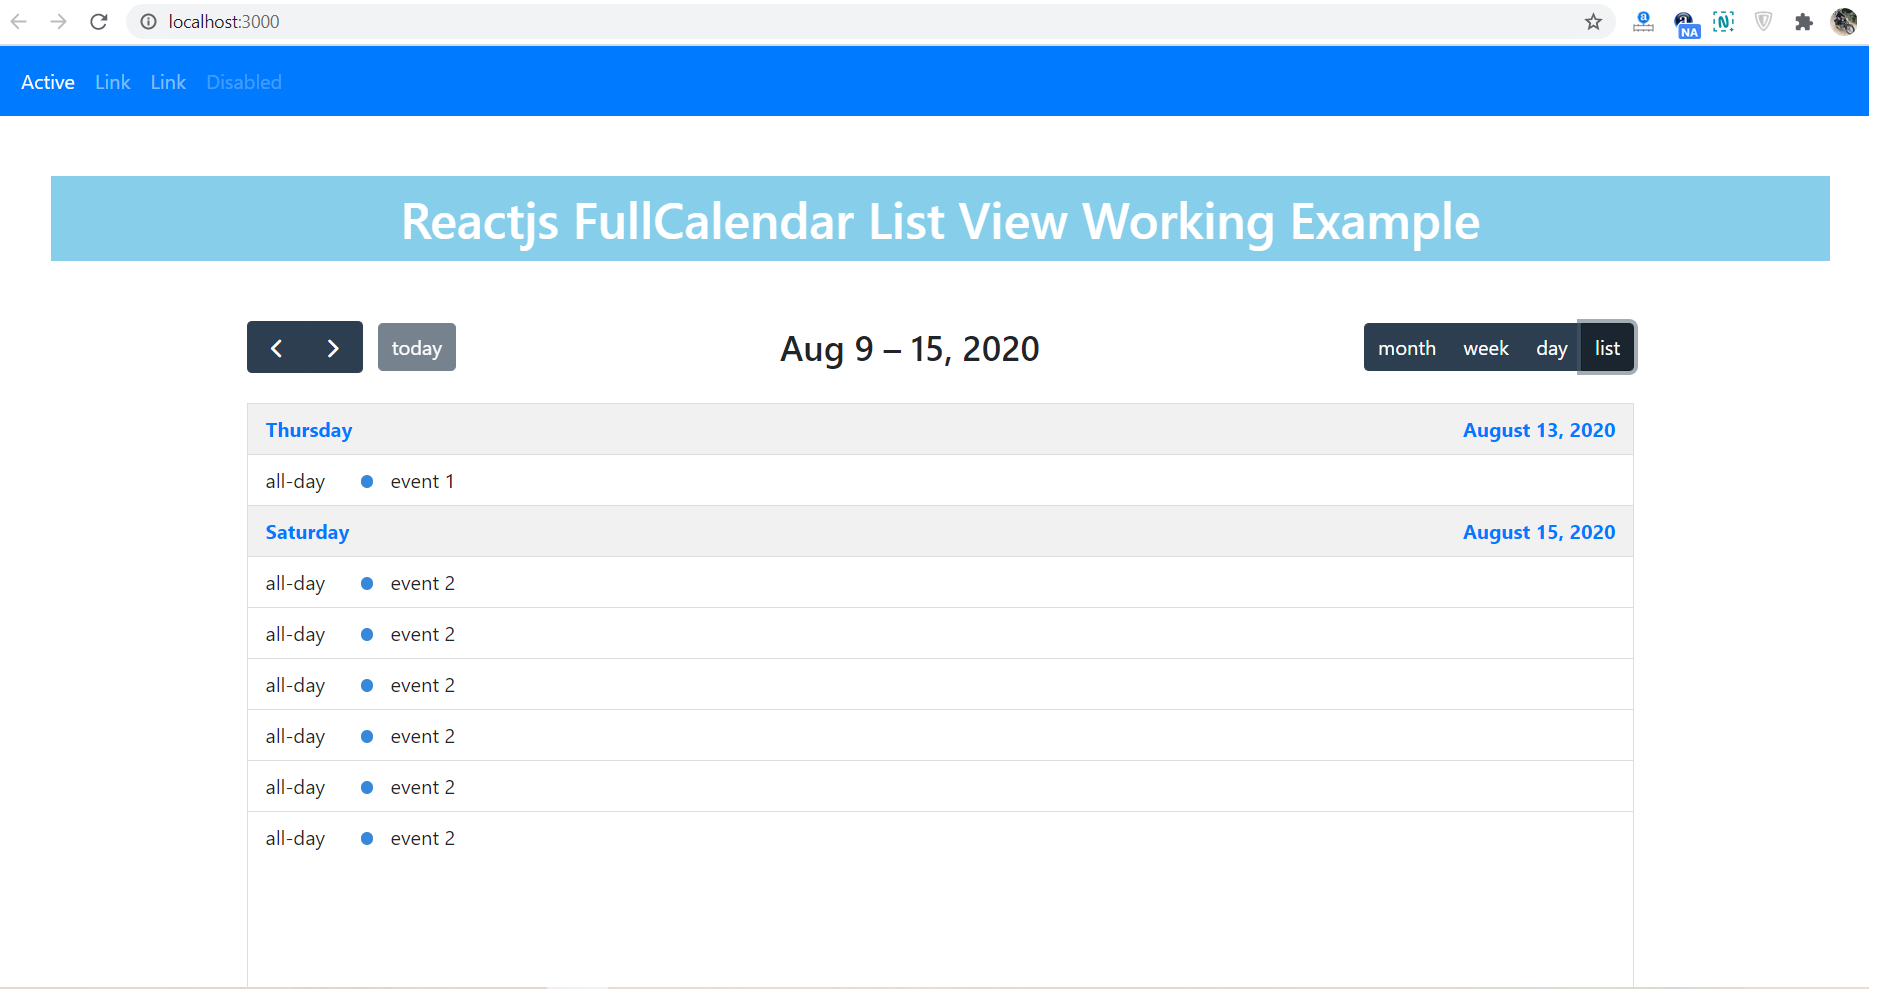 Reactjs FullCalendar List View Working Example